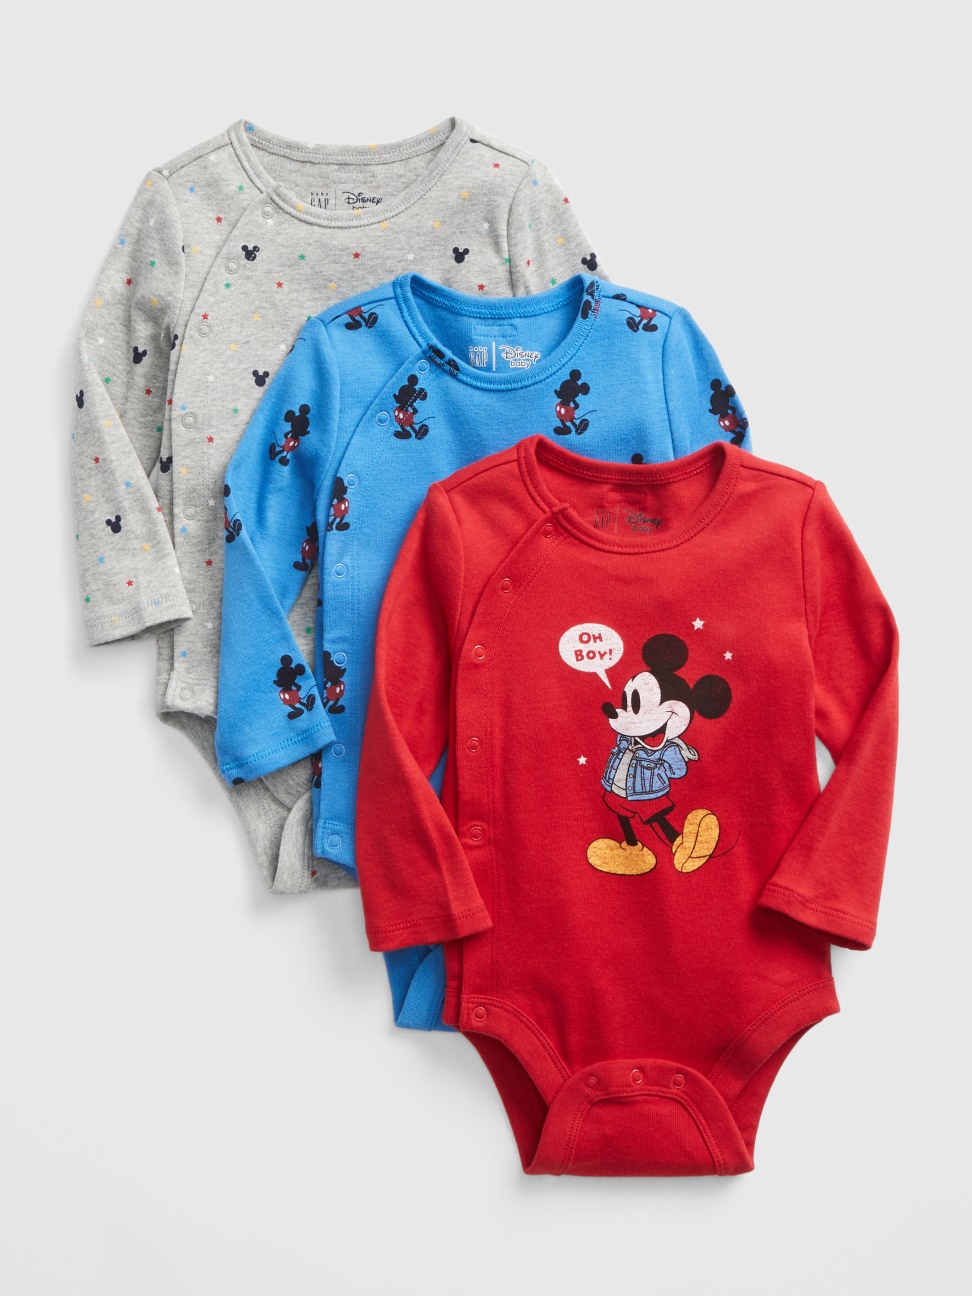 嬰兒裝|Gap x Disney迪士尼聯名 米奇包屁衣三件裝-微風藍